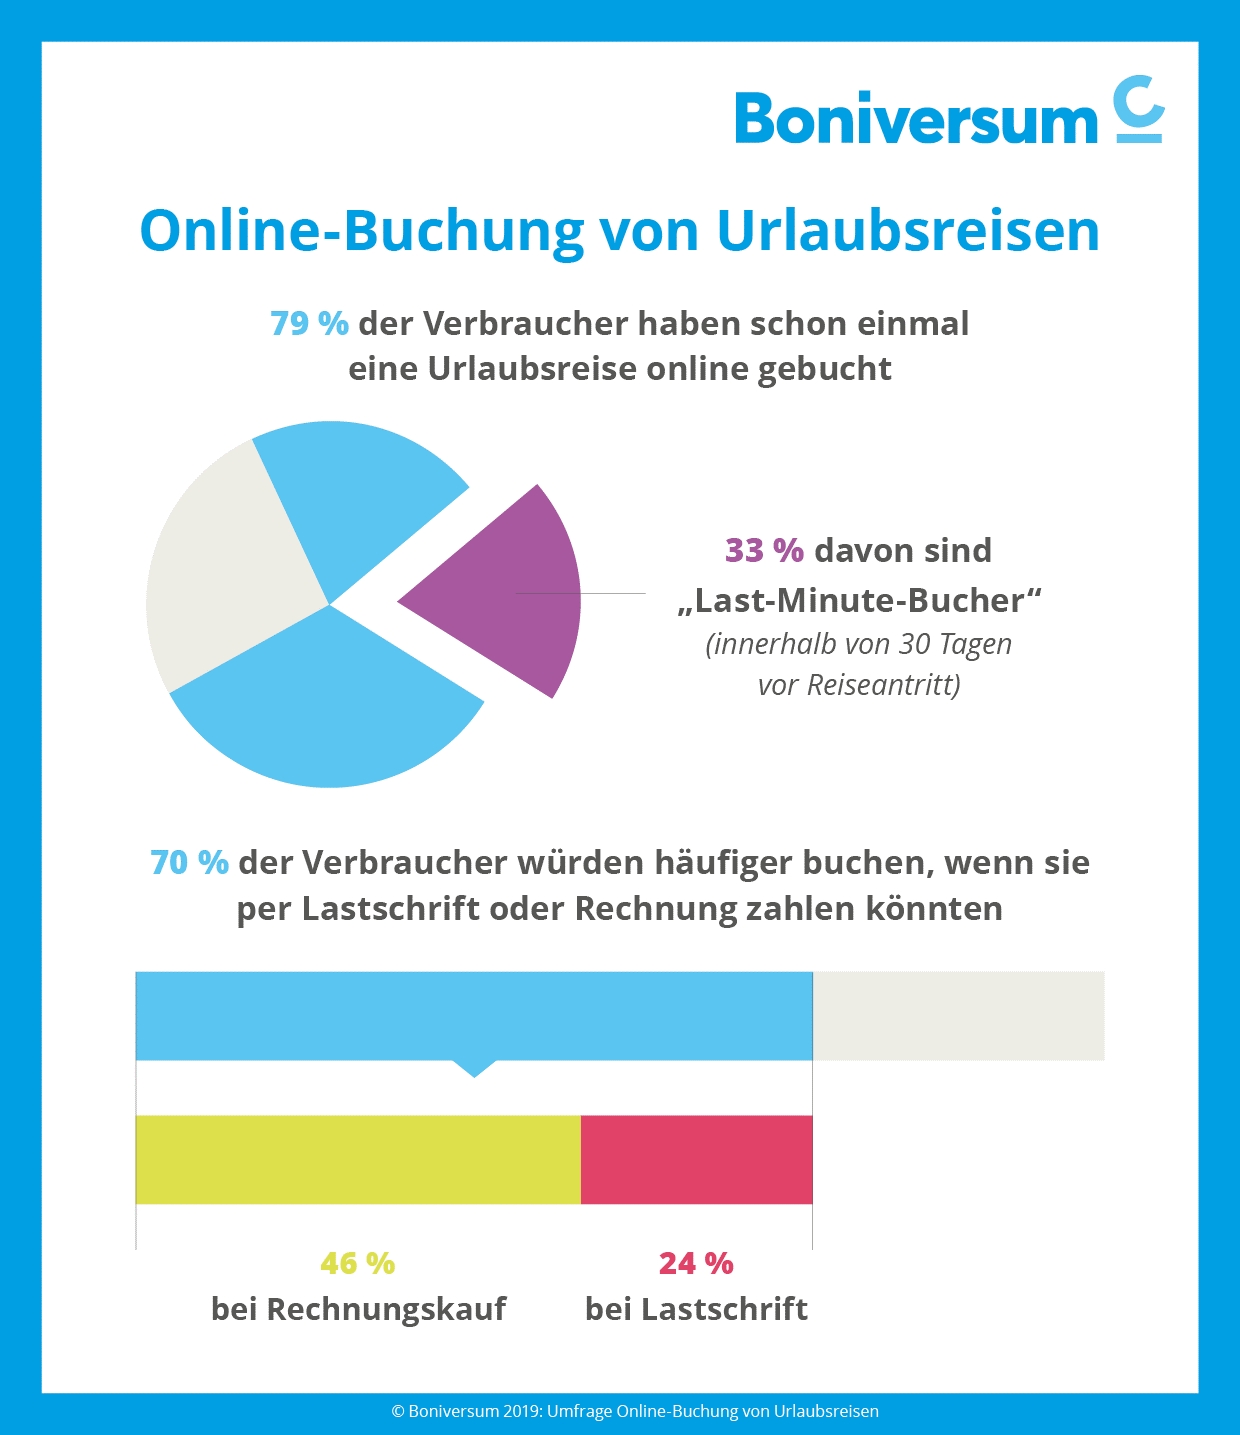 Verbraucherumfrage von Boniversum: Urlaubsreisen bucht der Deutsche zunehmend online